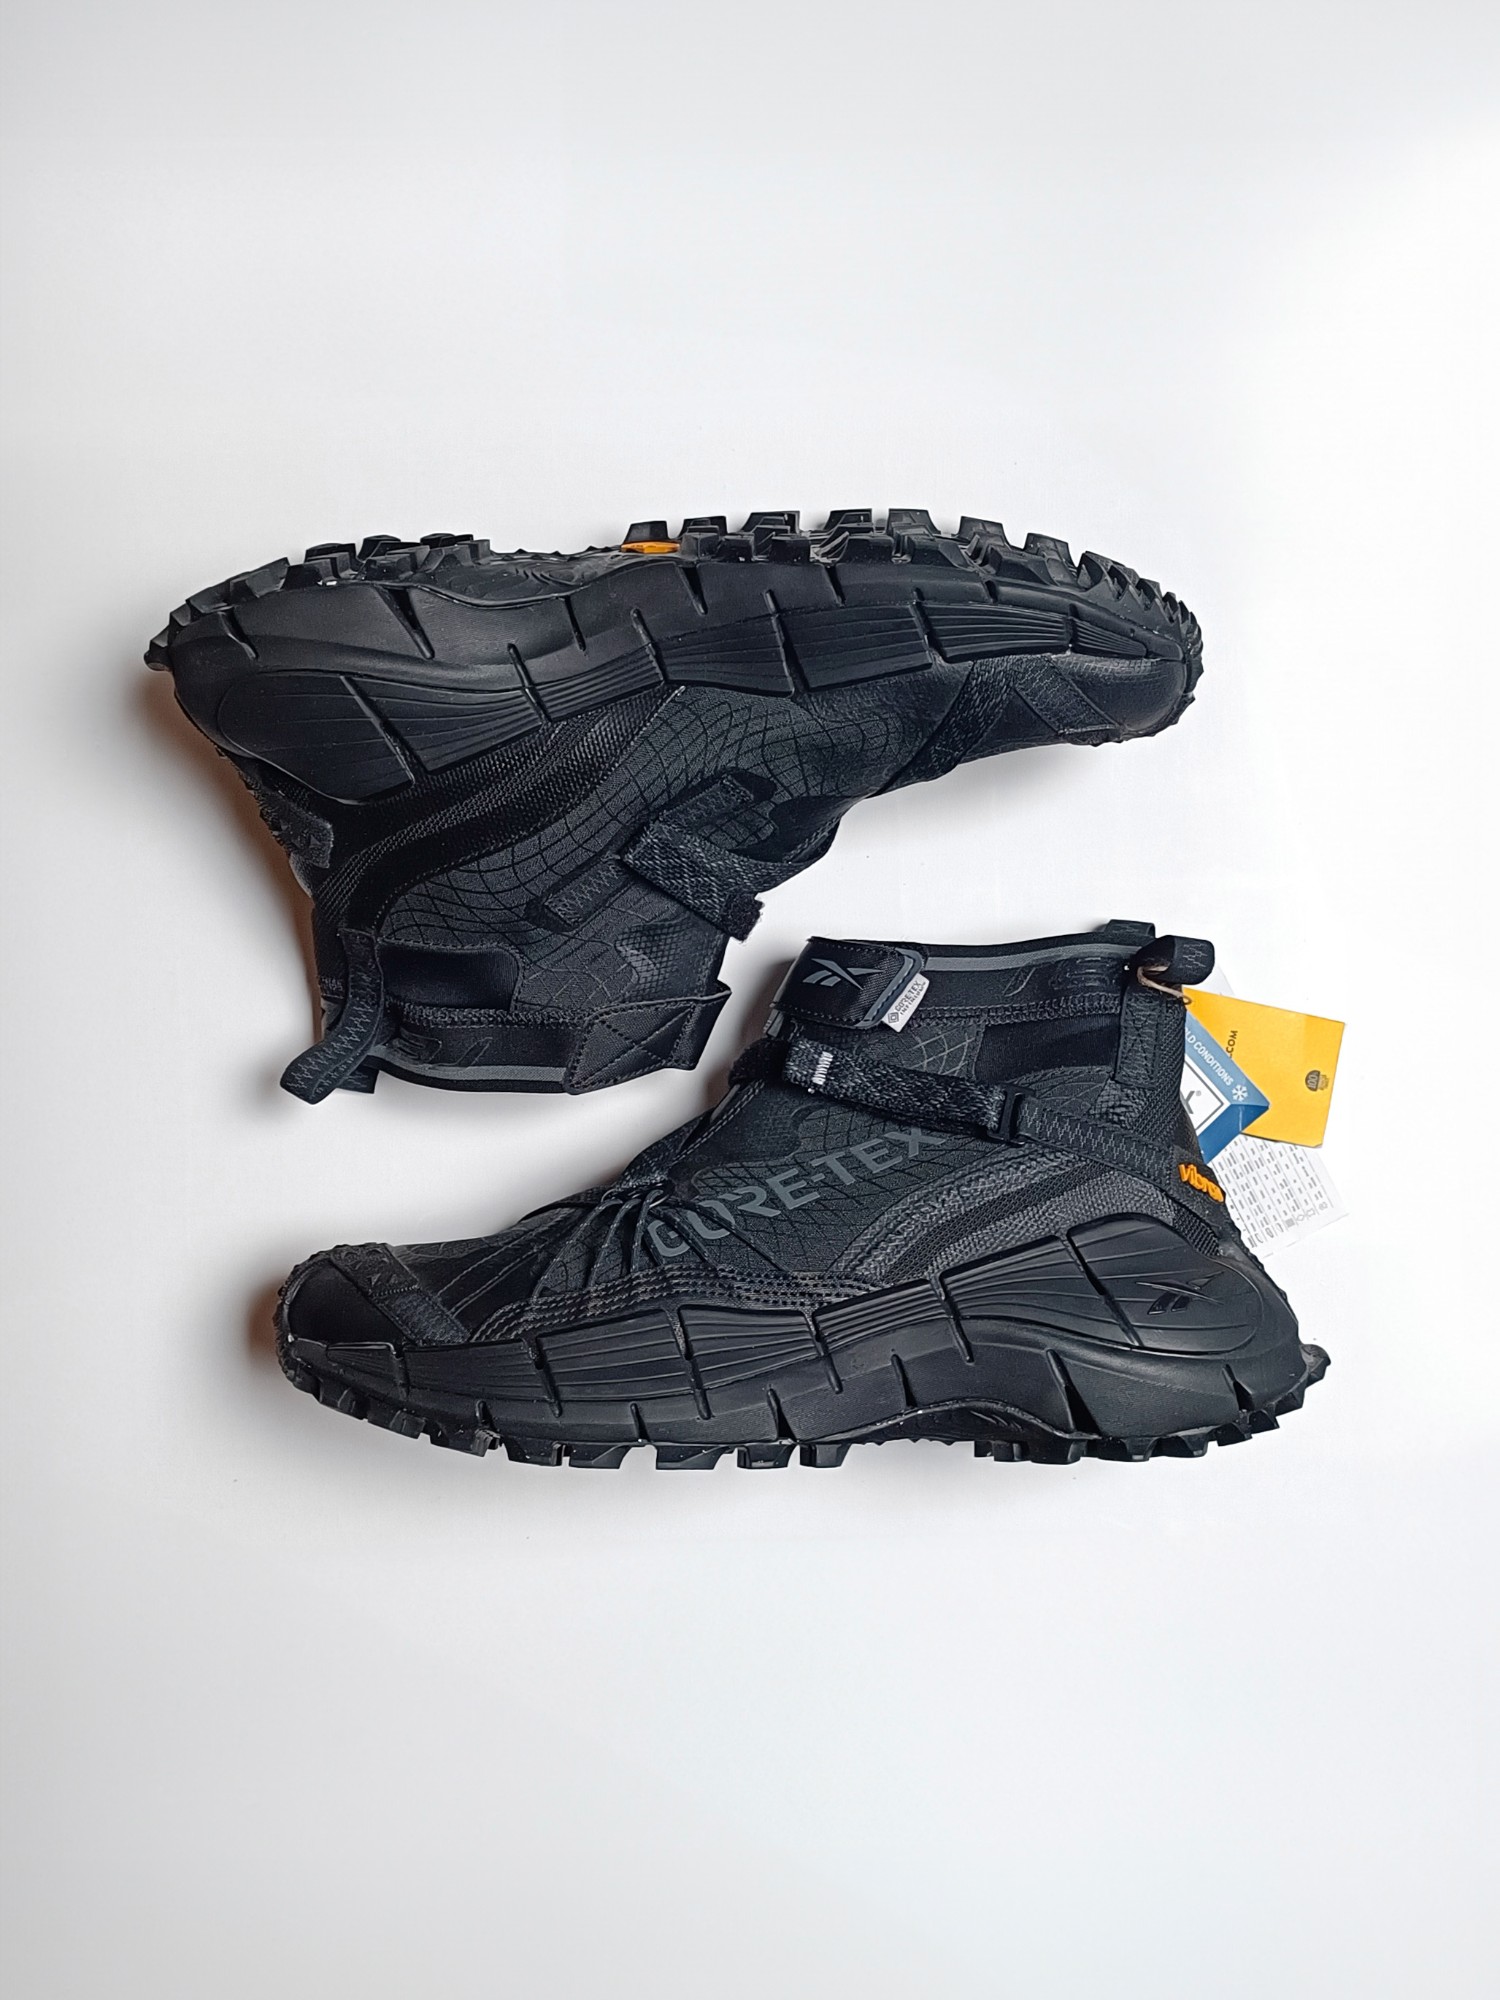 Reebok Zig Kinetica II Edge GORE-TEX 'Black' Techwear Sneakers - 1